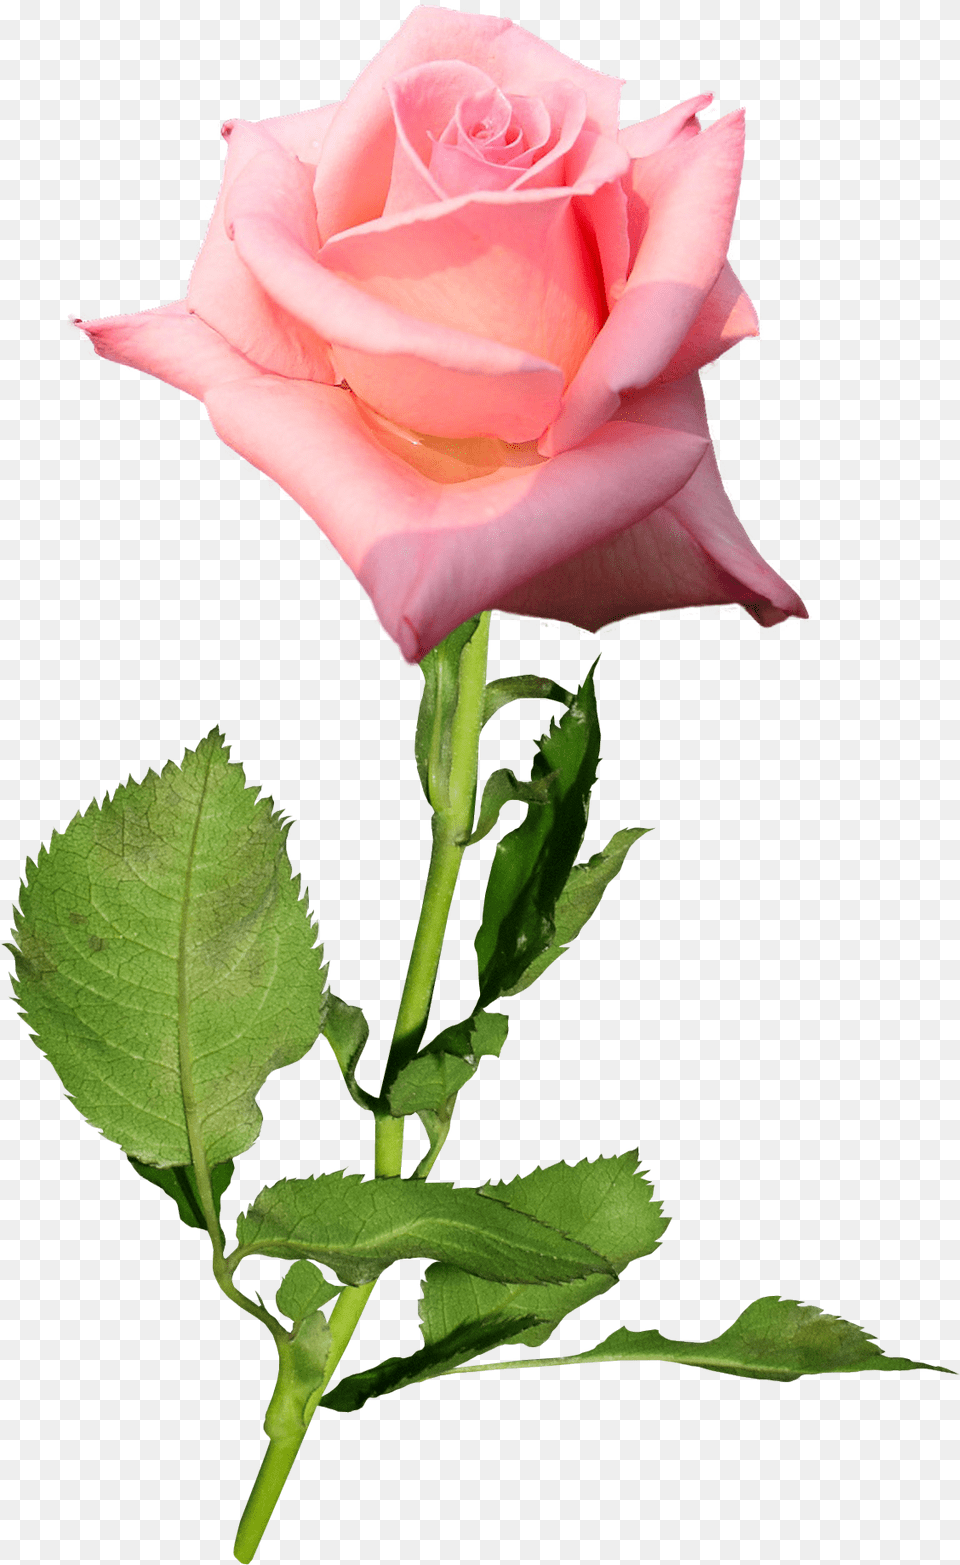 Garden Roses Flower Hybrid Tea Rose Bud Transparent Rose Buds, Plant Png Image